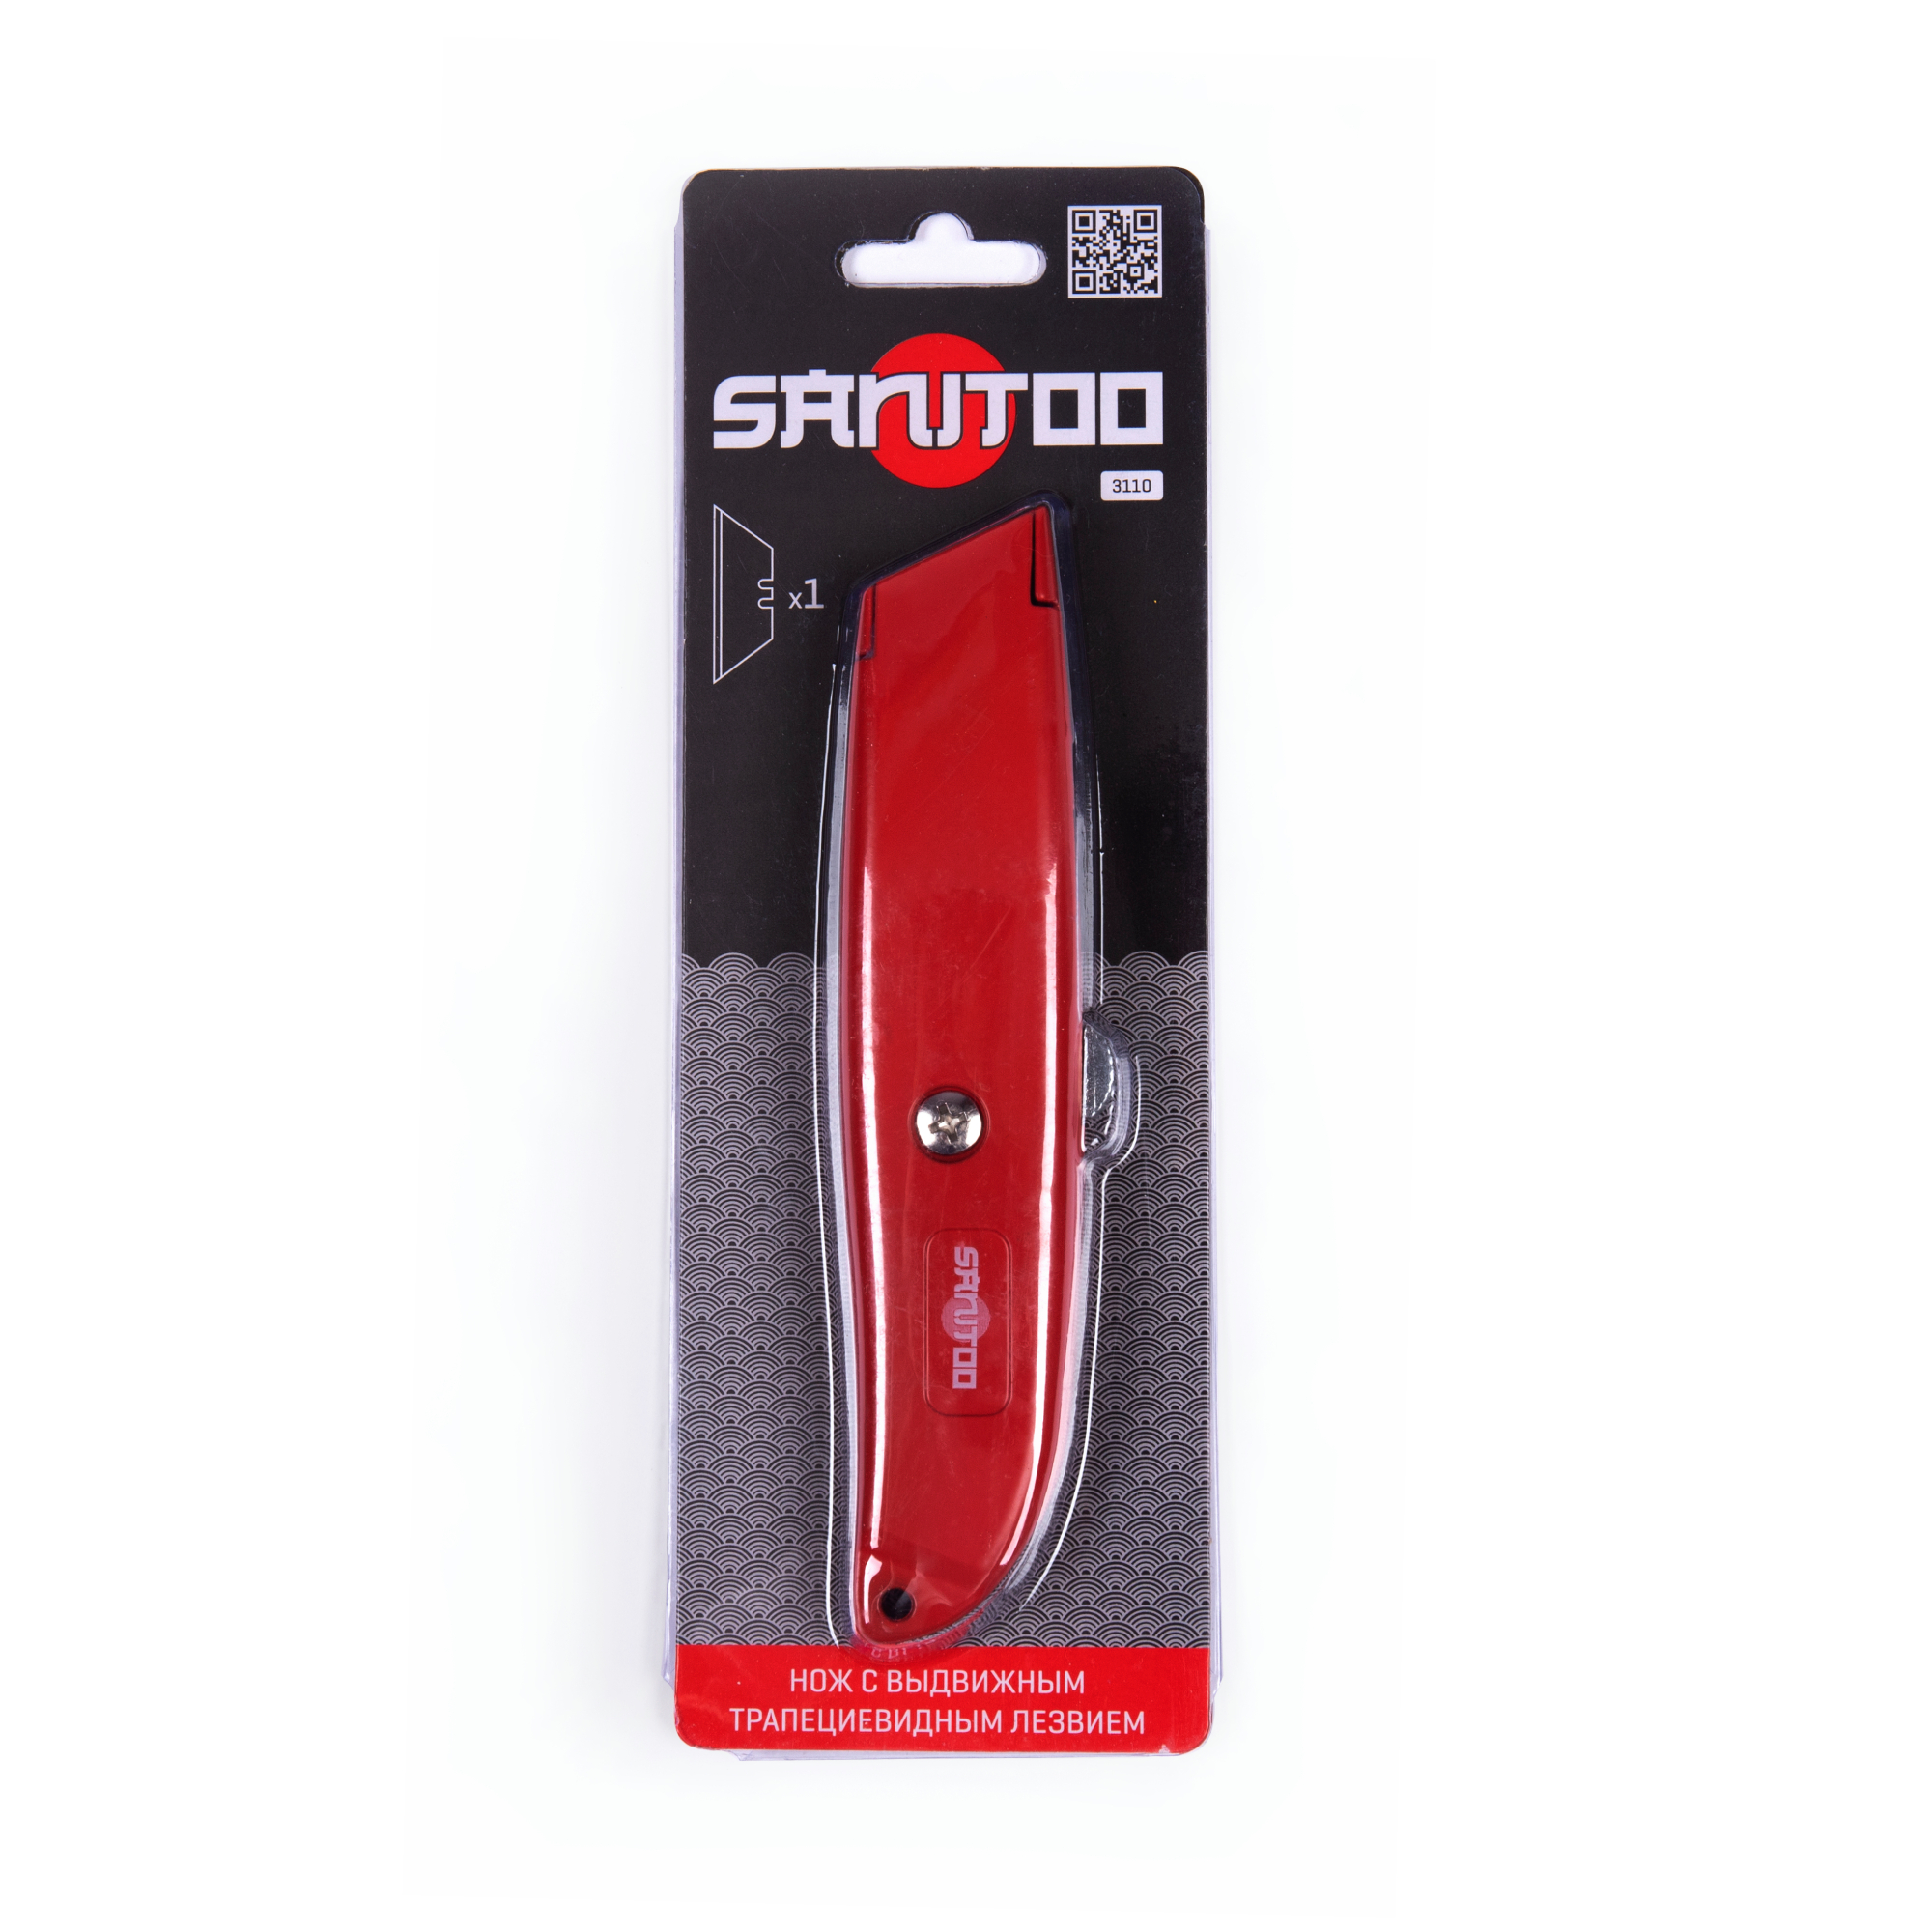 Нож Sanitoo с выдвижным трапециевидным лезвием нож с выдвижным сегментированным лезвием